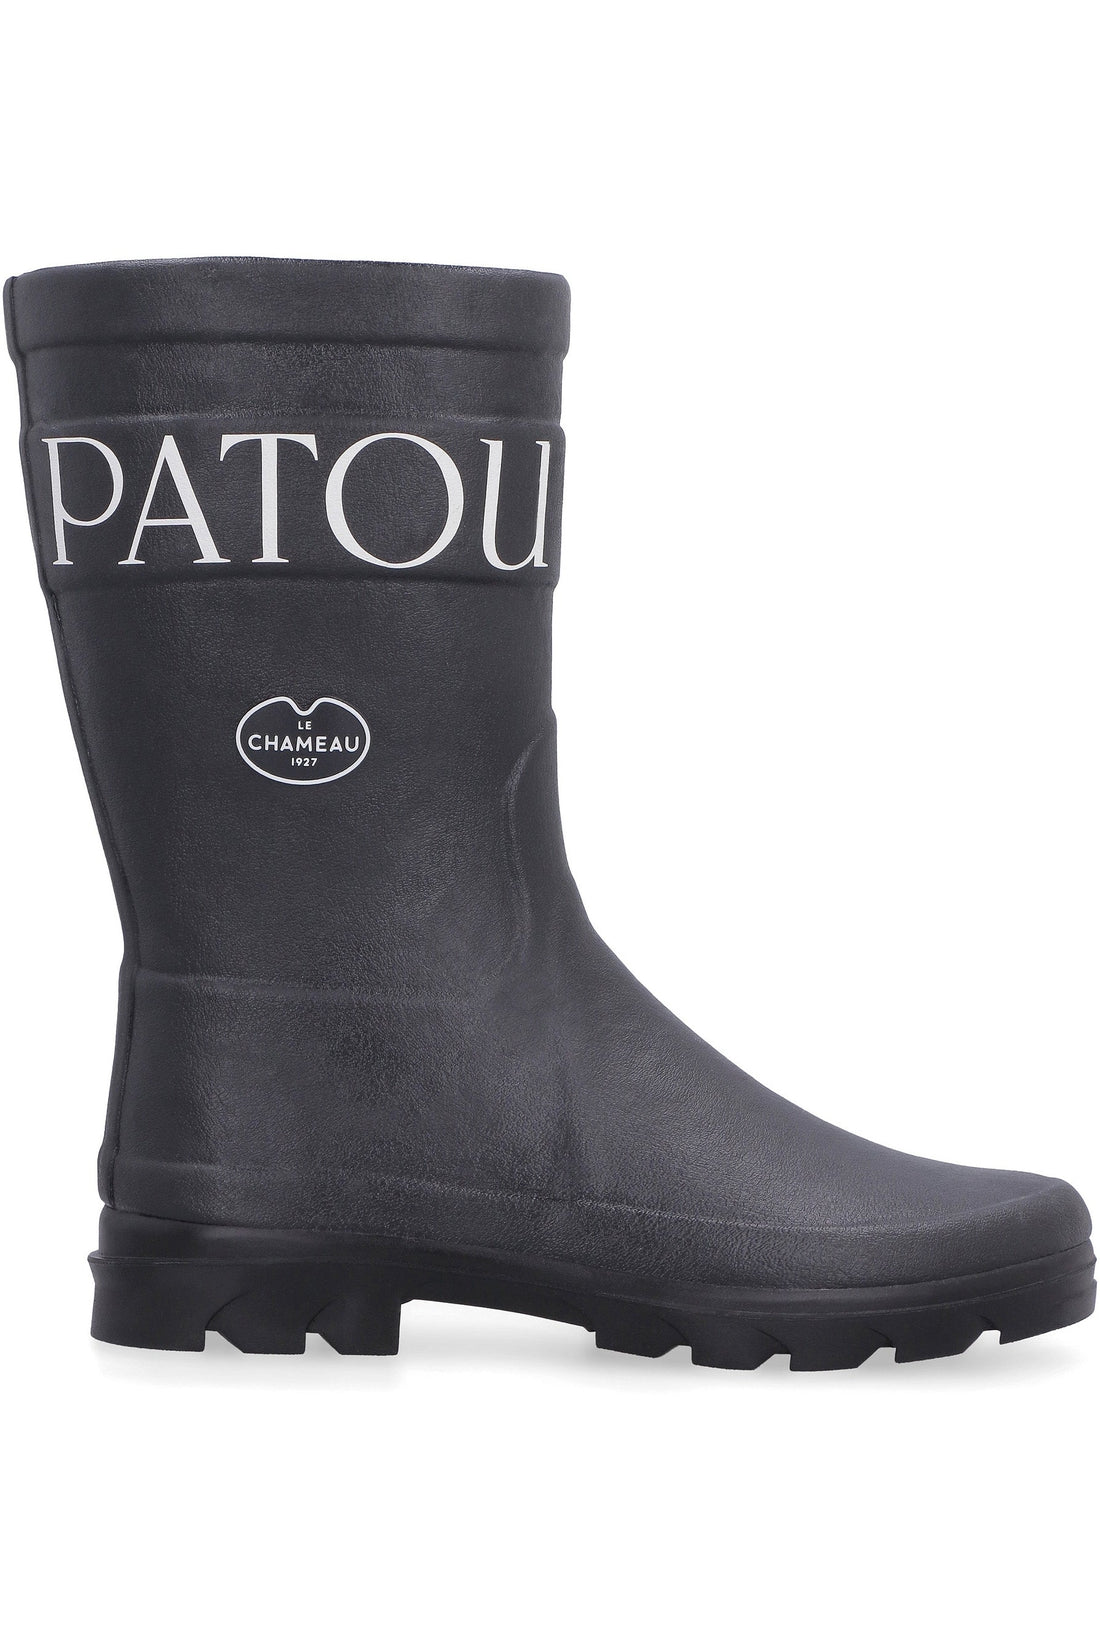 Patou-OUTLET-SALE-Patou x Le Chameau - Rubber boots-ARCHIVIST